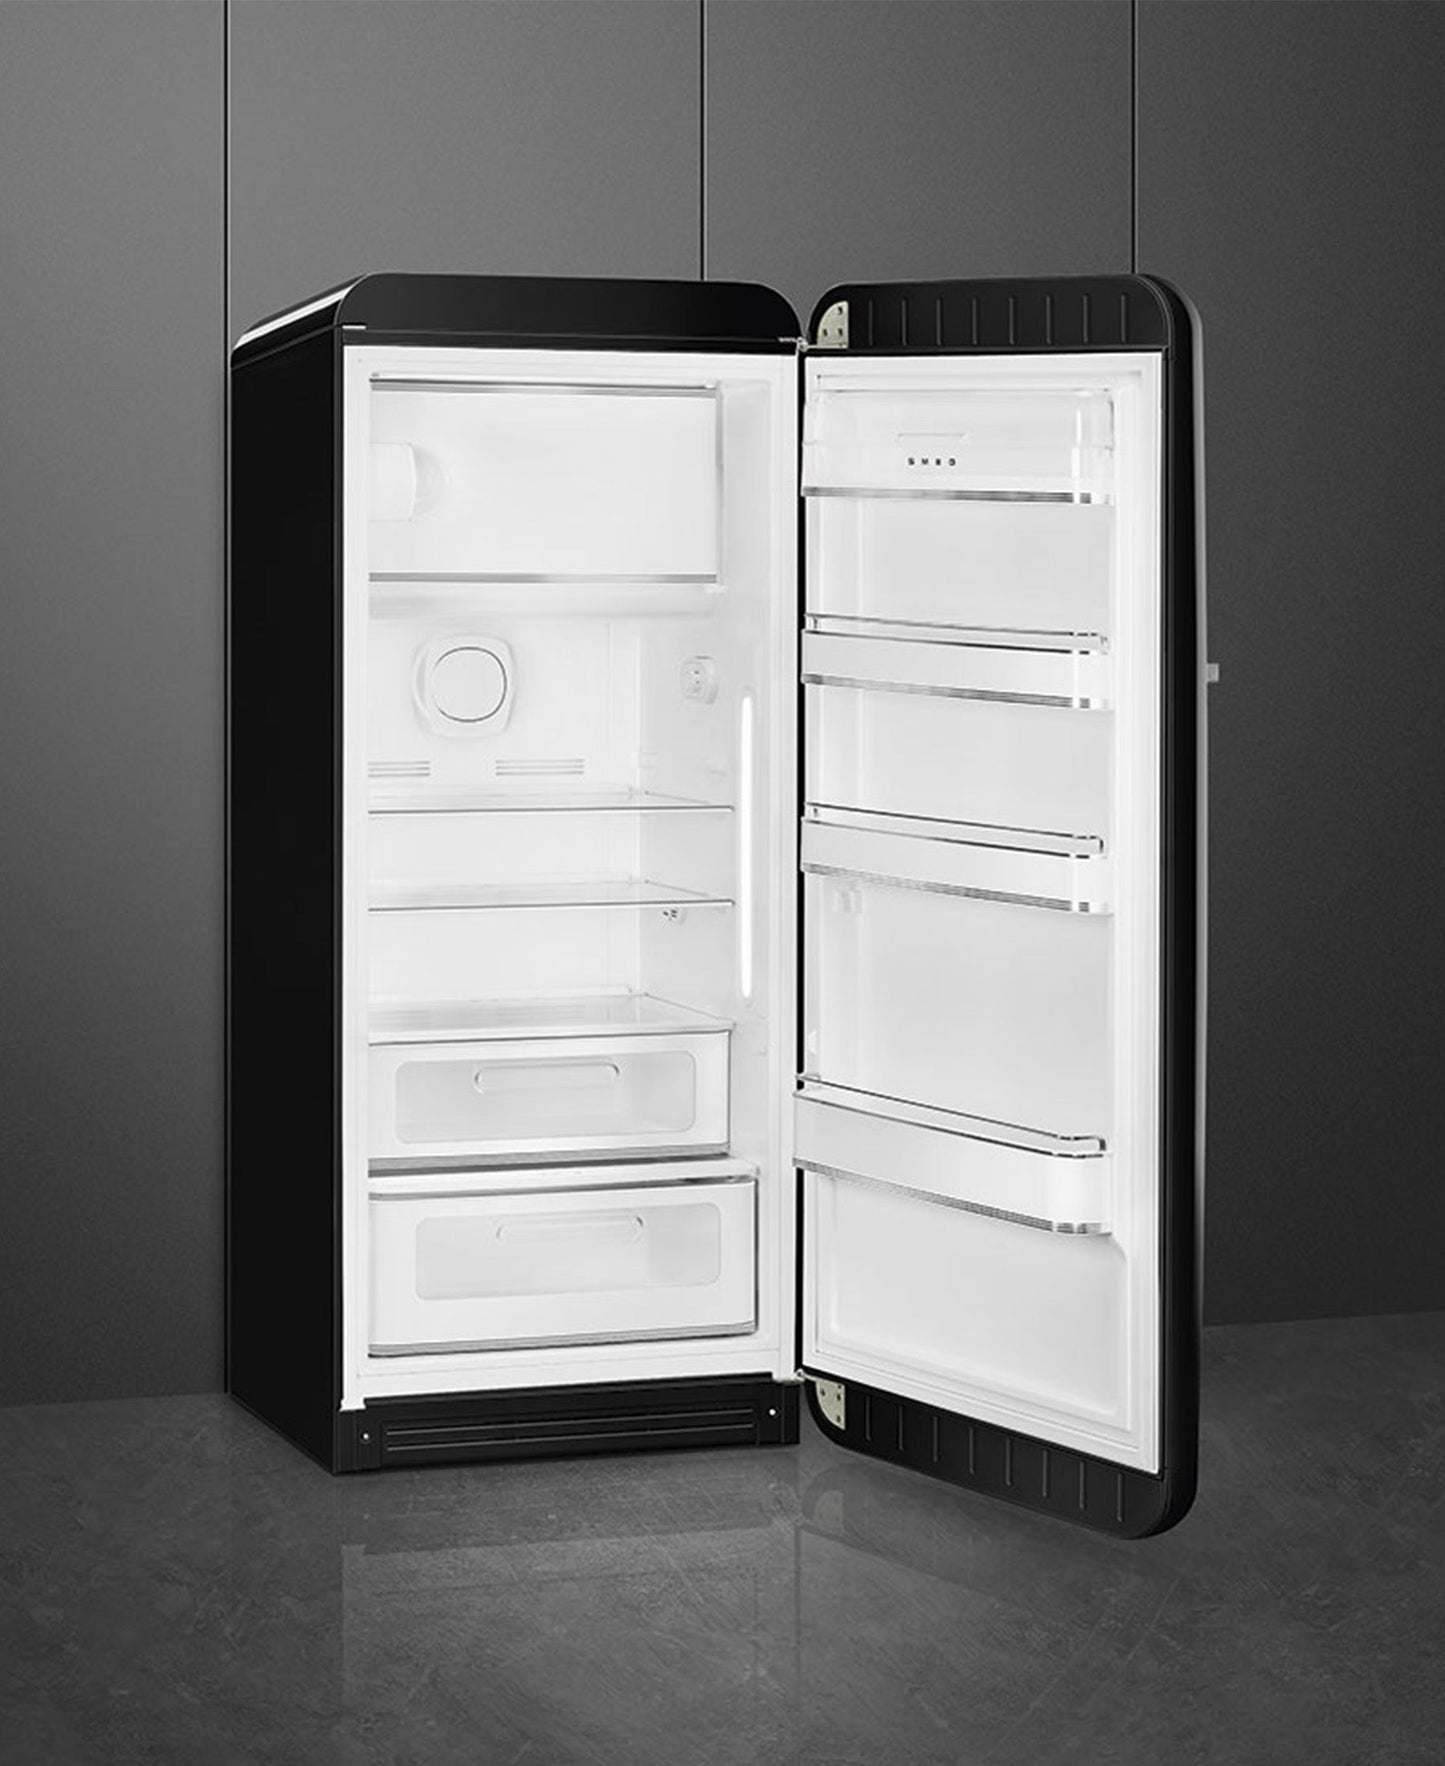 Smeg Retro Refrigerator - Glossy Black